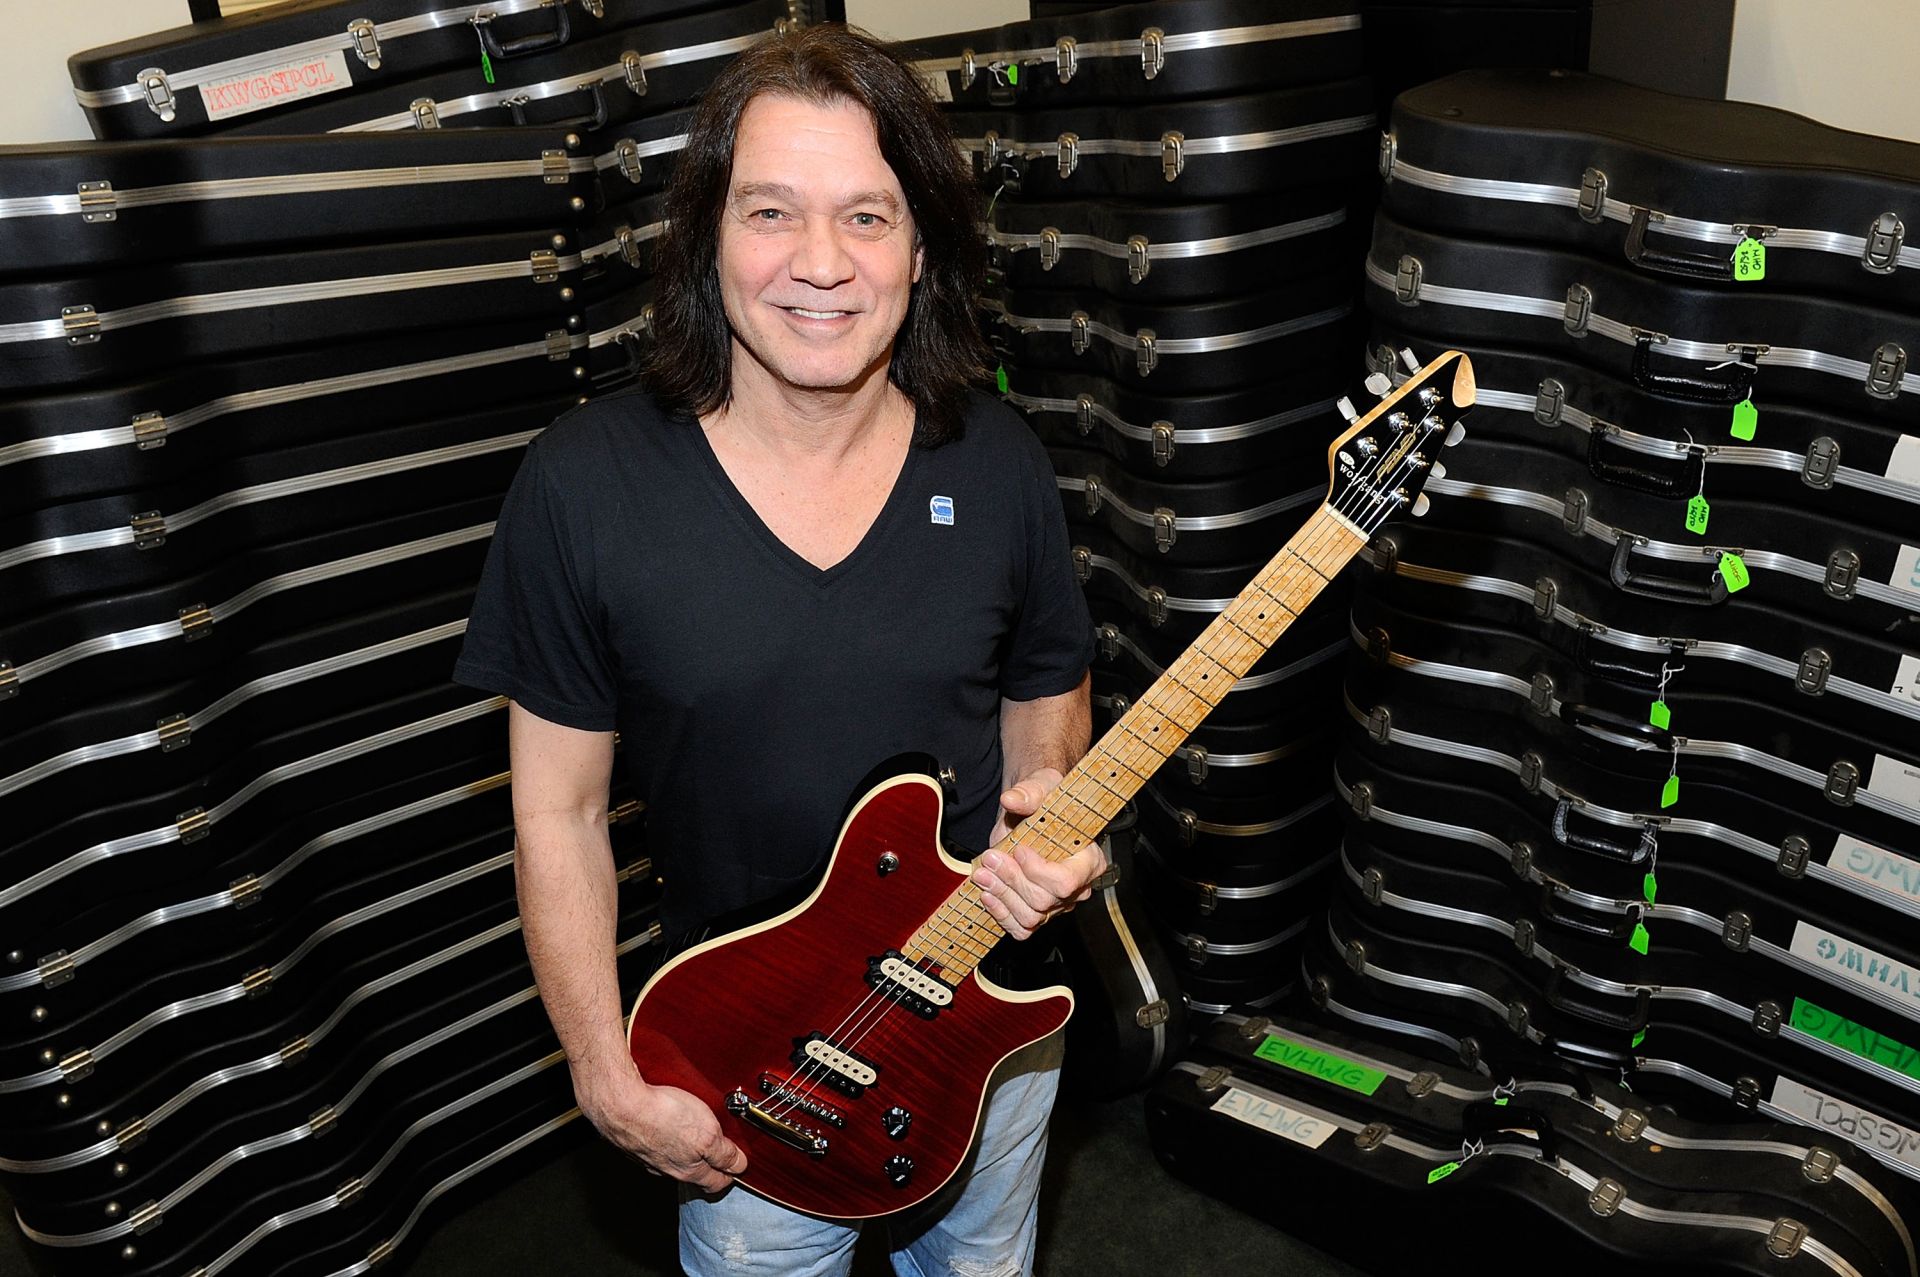 През 2012 г. Еди дари 75 китари от своята колекция за фондация, която подкрепя музикалното образование